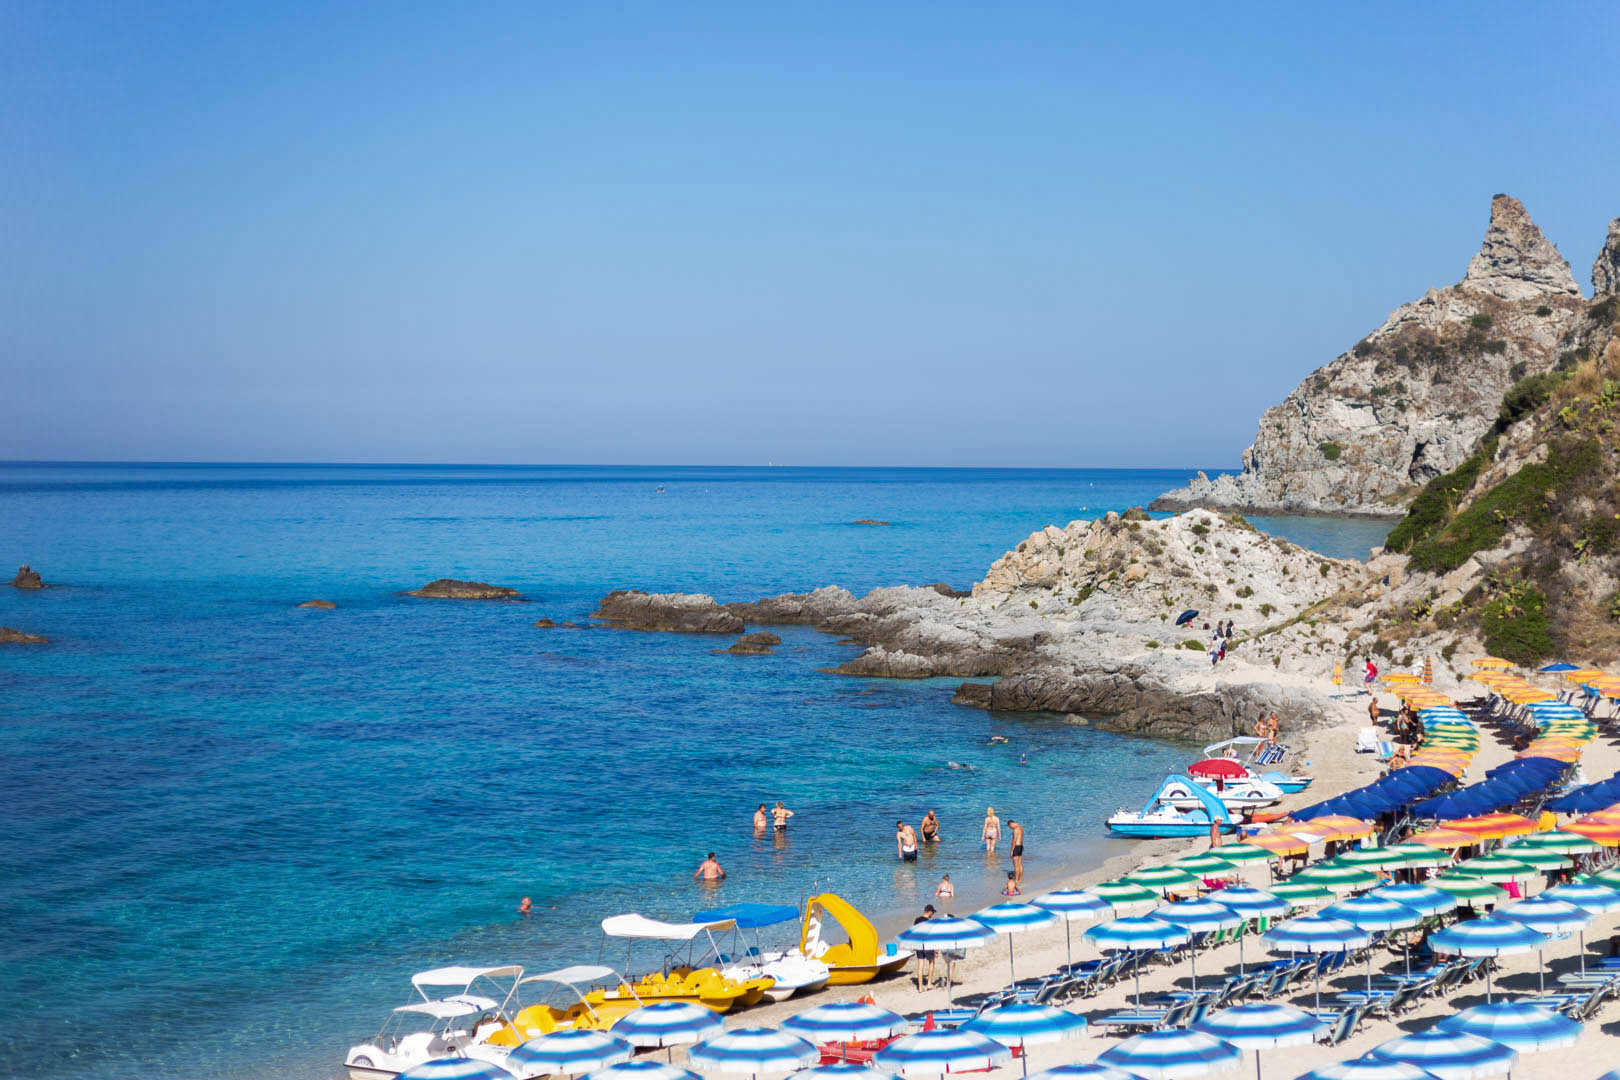 Servizio spiaggia per le tue vacanze al mare presso l'Hotel Residence il Gattopardo a Capo Vaticano vicino Tropea